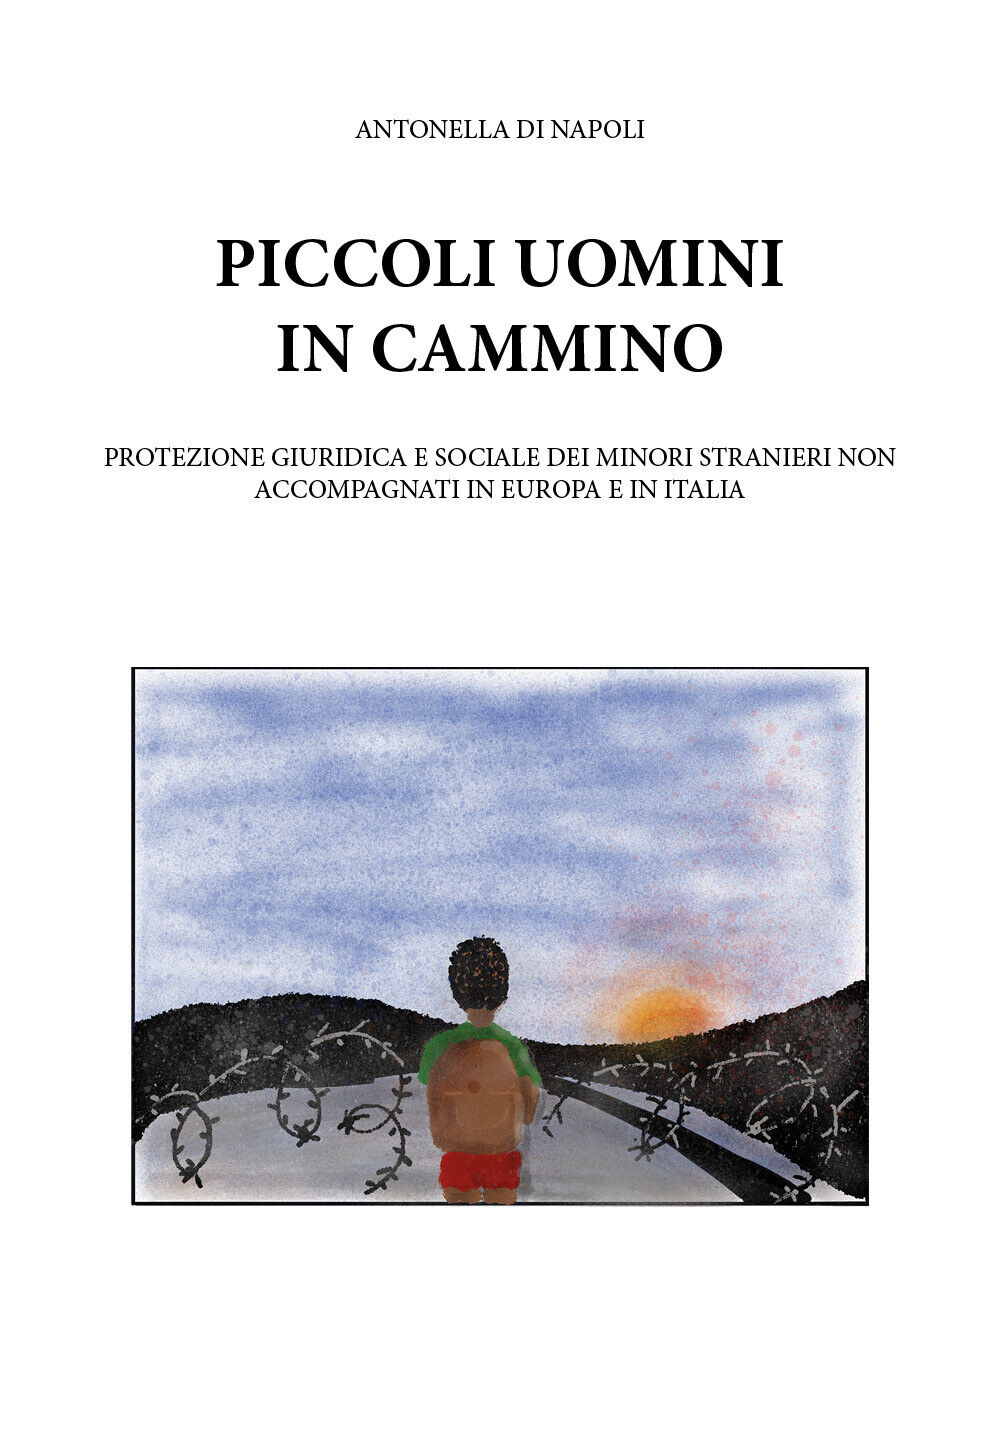 Piccoli uomini in cammino - Antonella Di Napoli,  2020,  Youcanprint